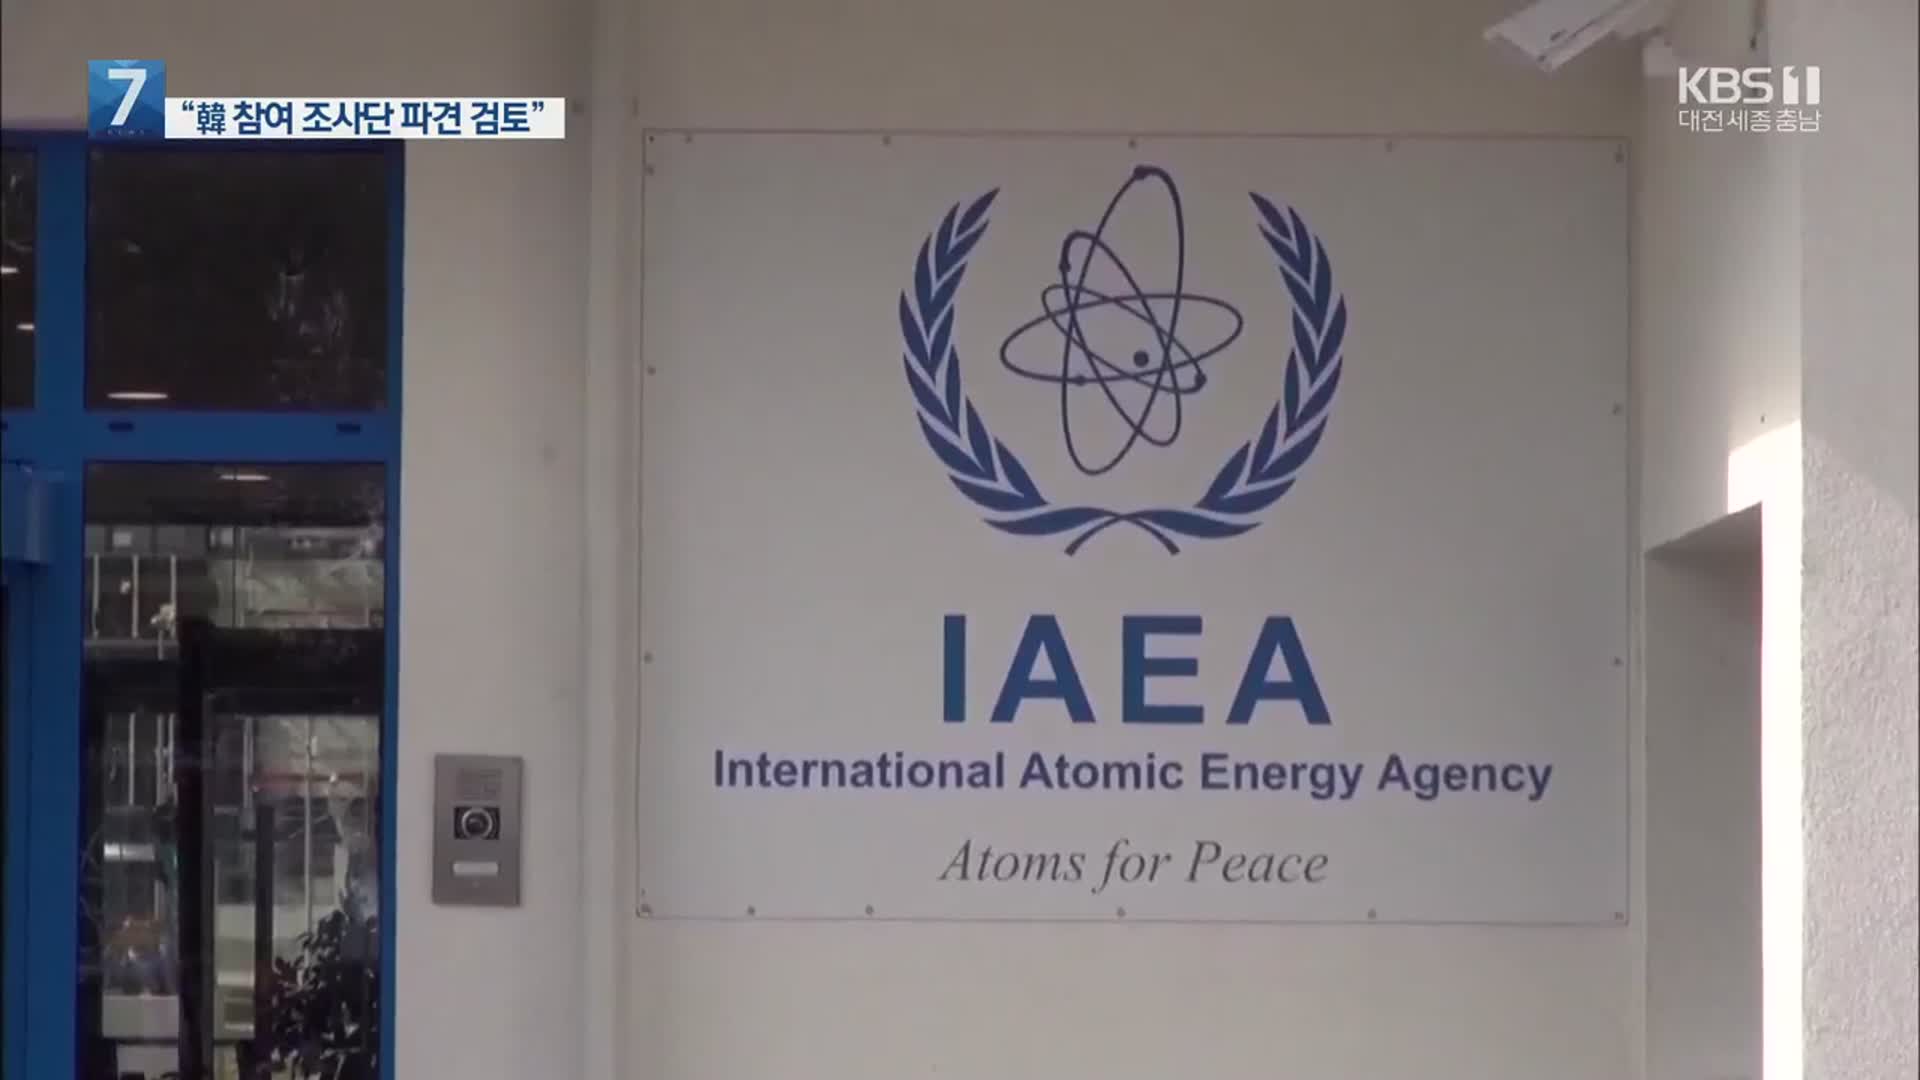 한중 반발에 日 당혹?…IAEA “韓참여 국제조사단 파견 검토”